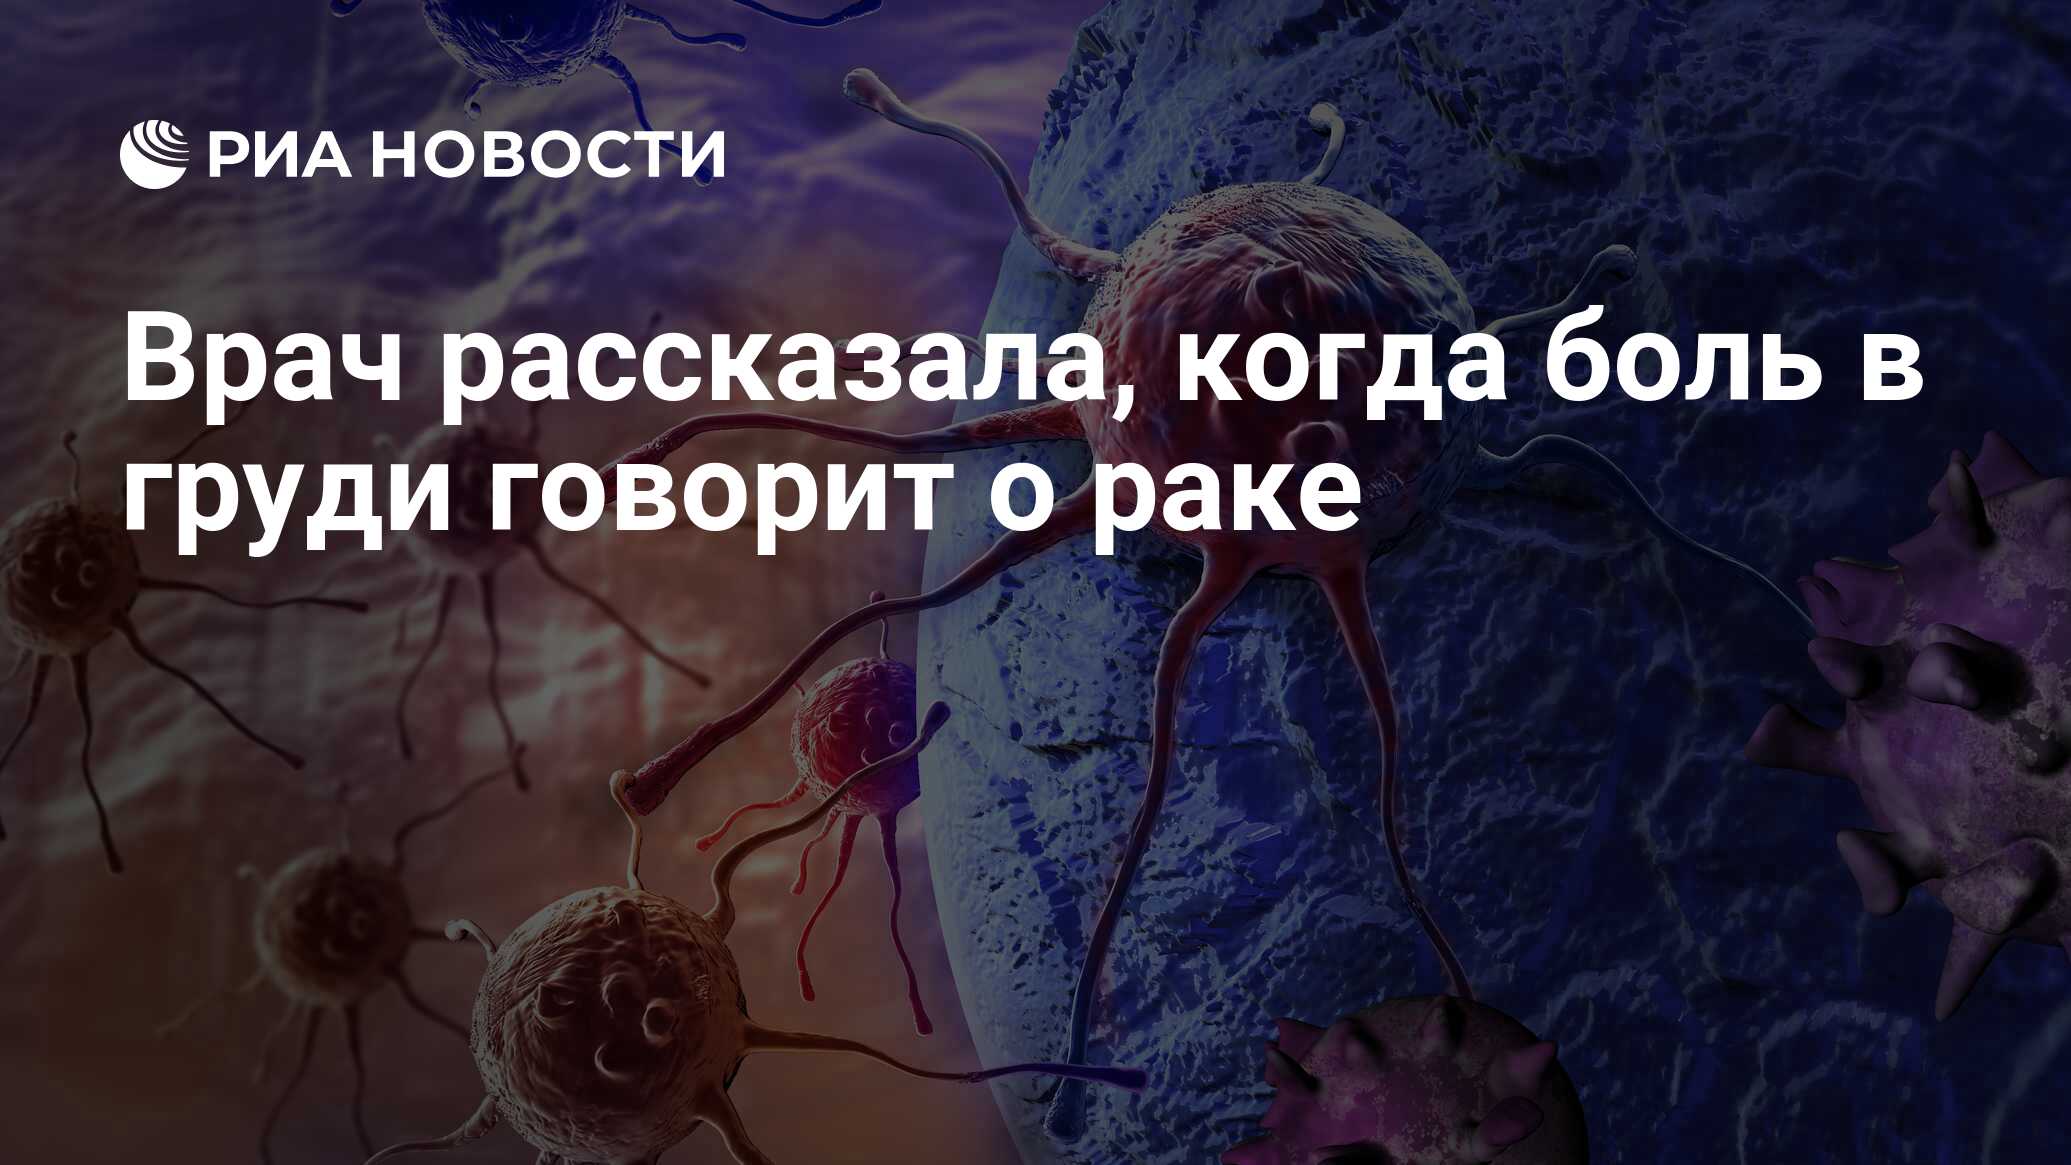 Врач рассказала, когда боль в груди говорит о раке - РИА Новости, 19.06.2020